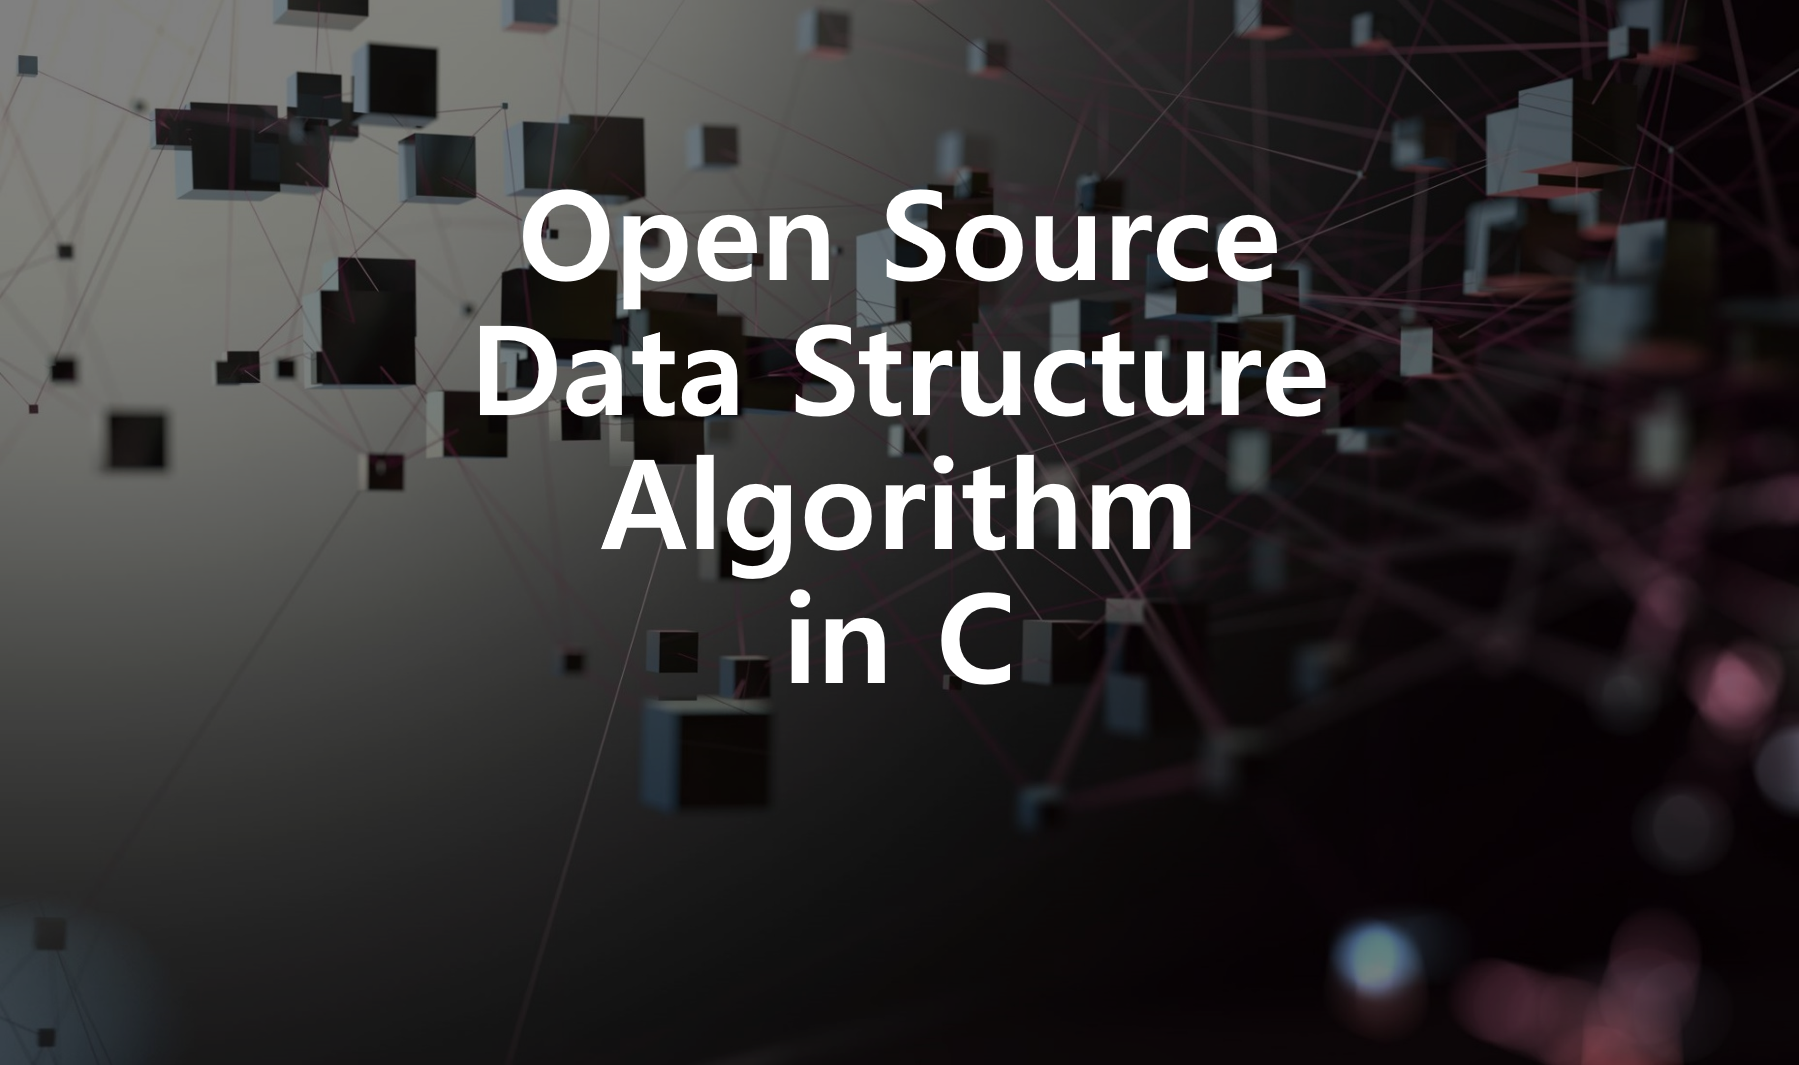 오픈소스 자료구조 및 알고리즘 In C 강의 - 인프런